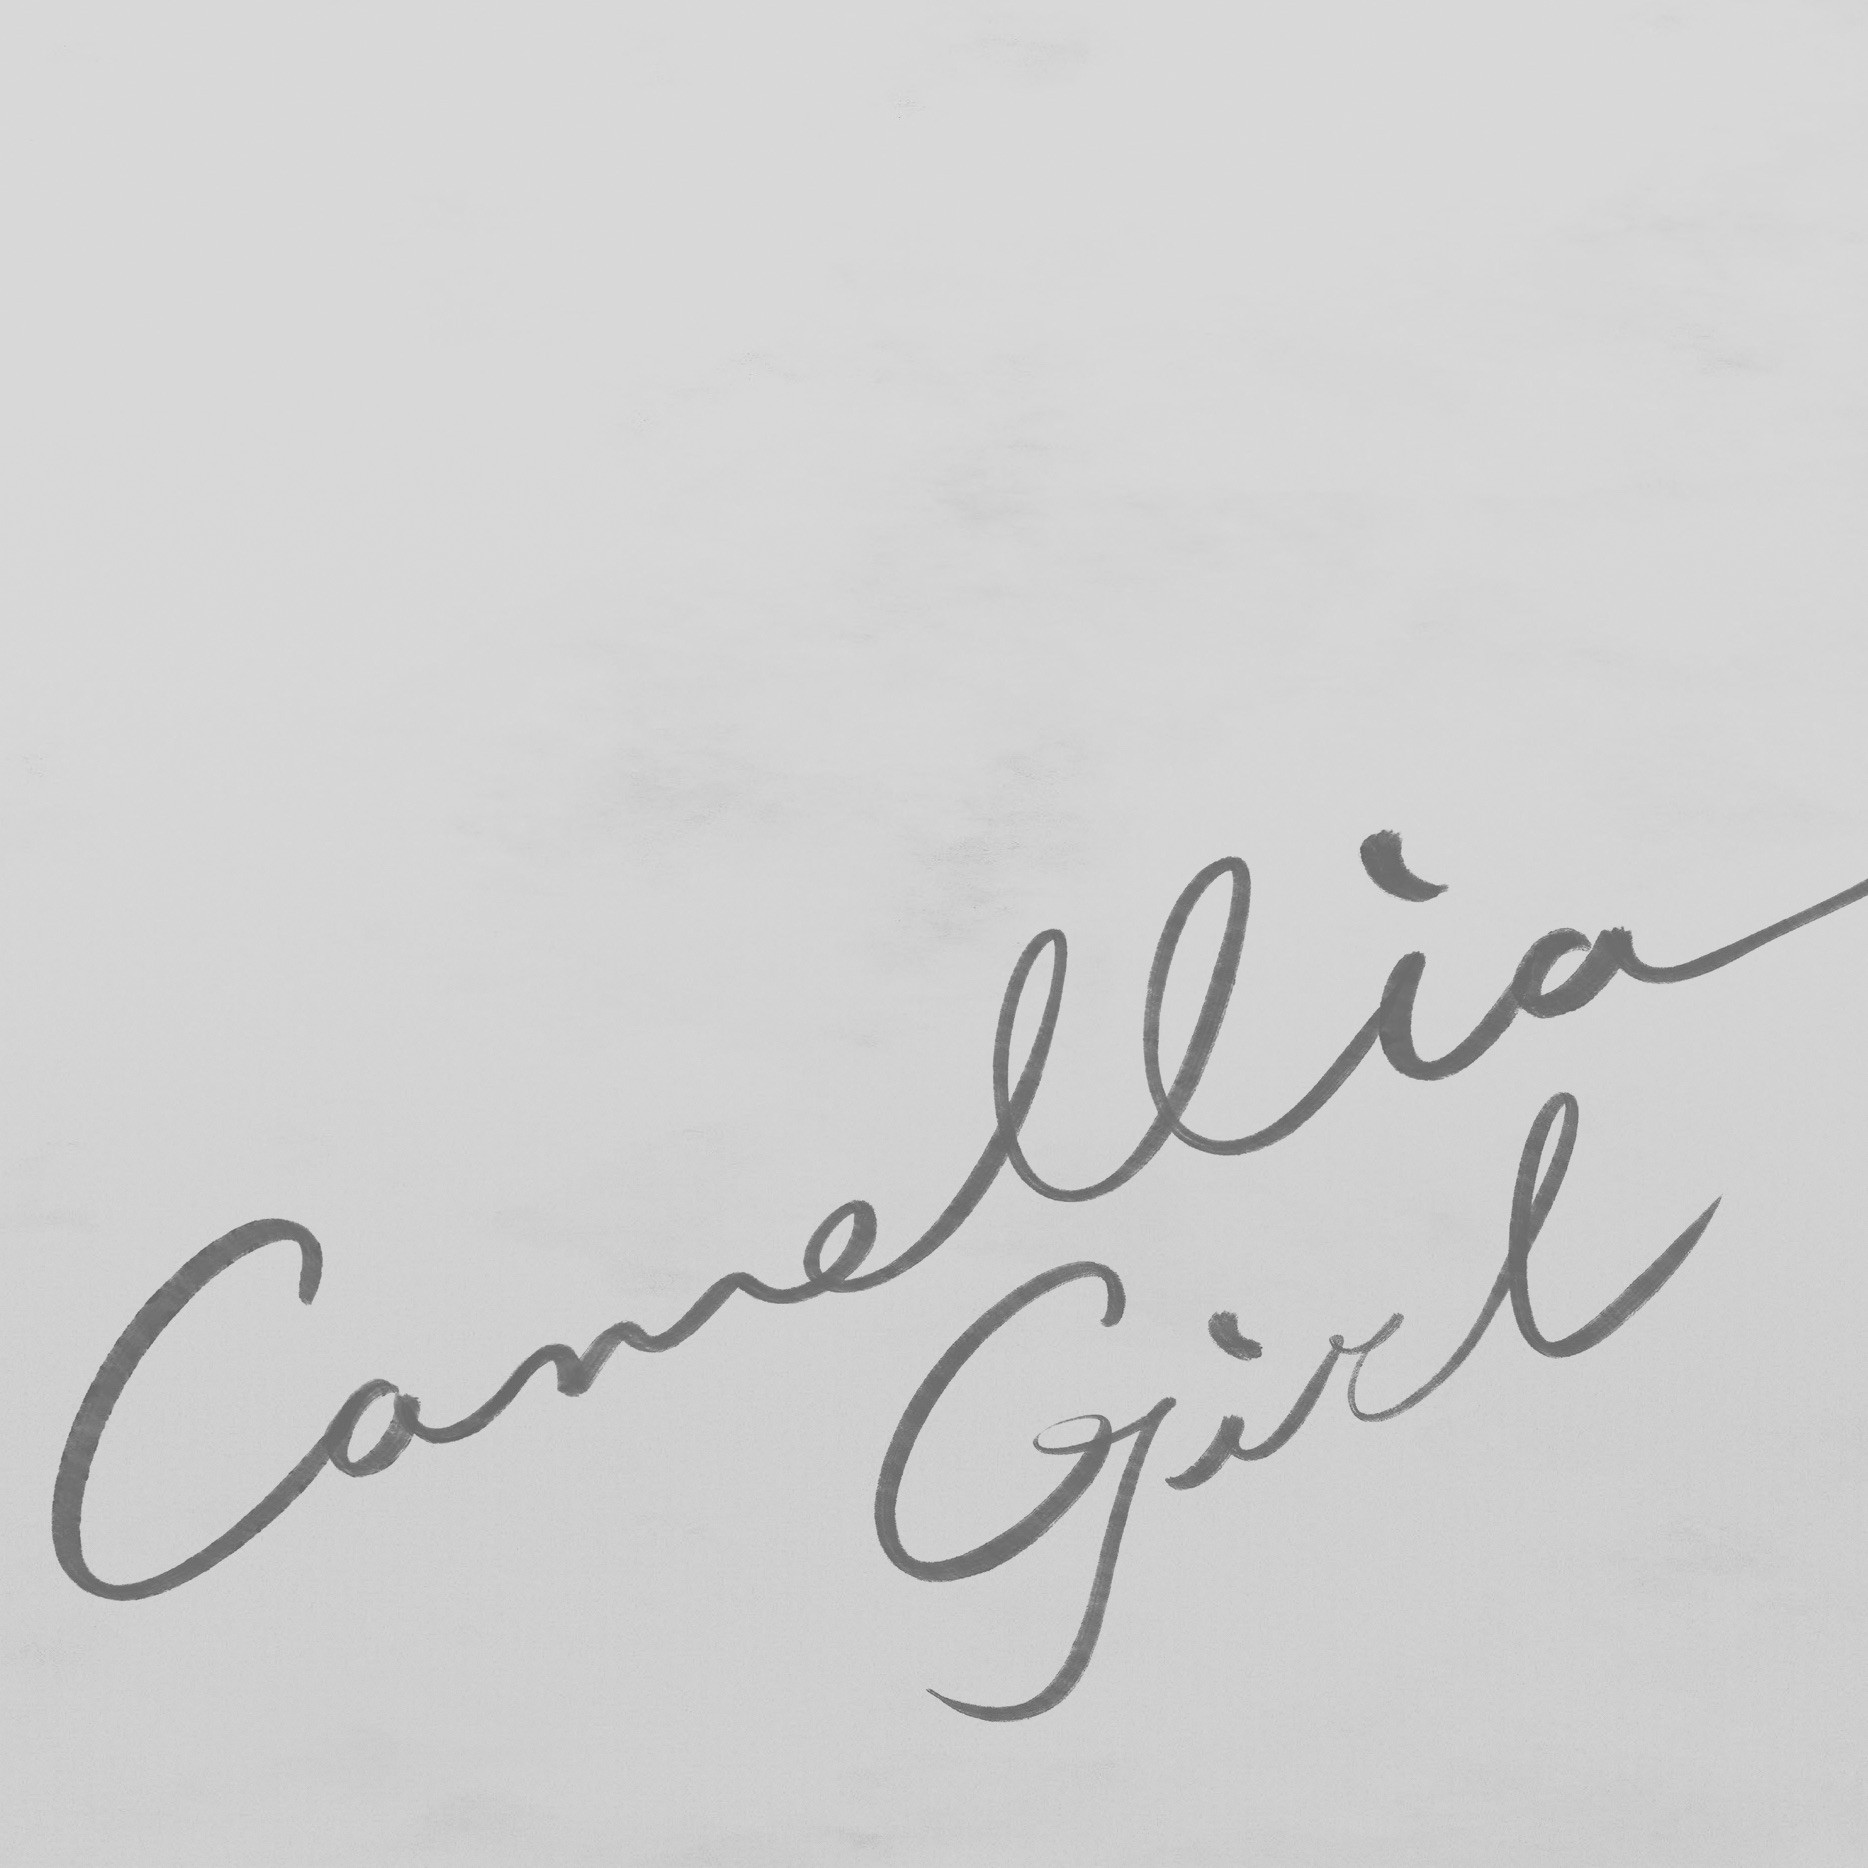 Camellia Girl